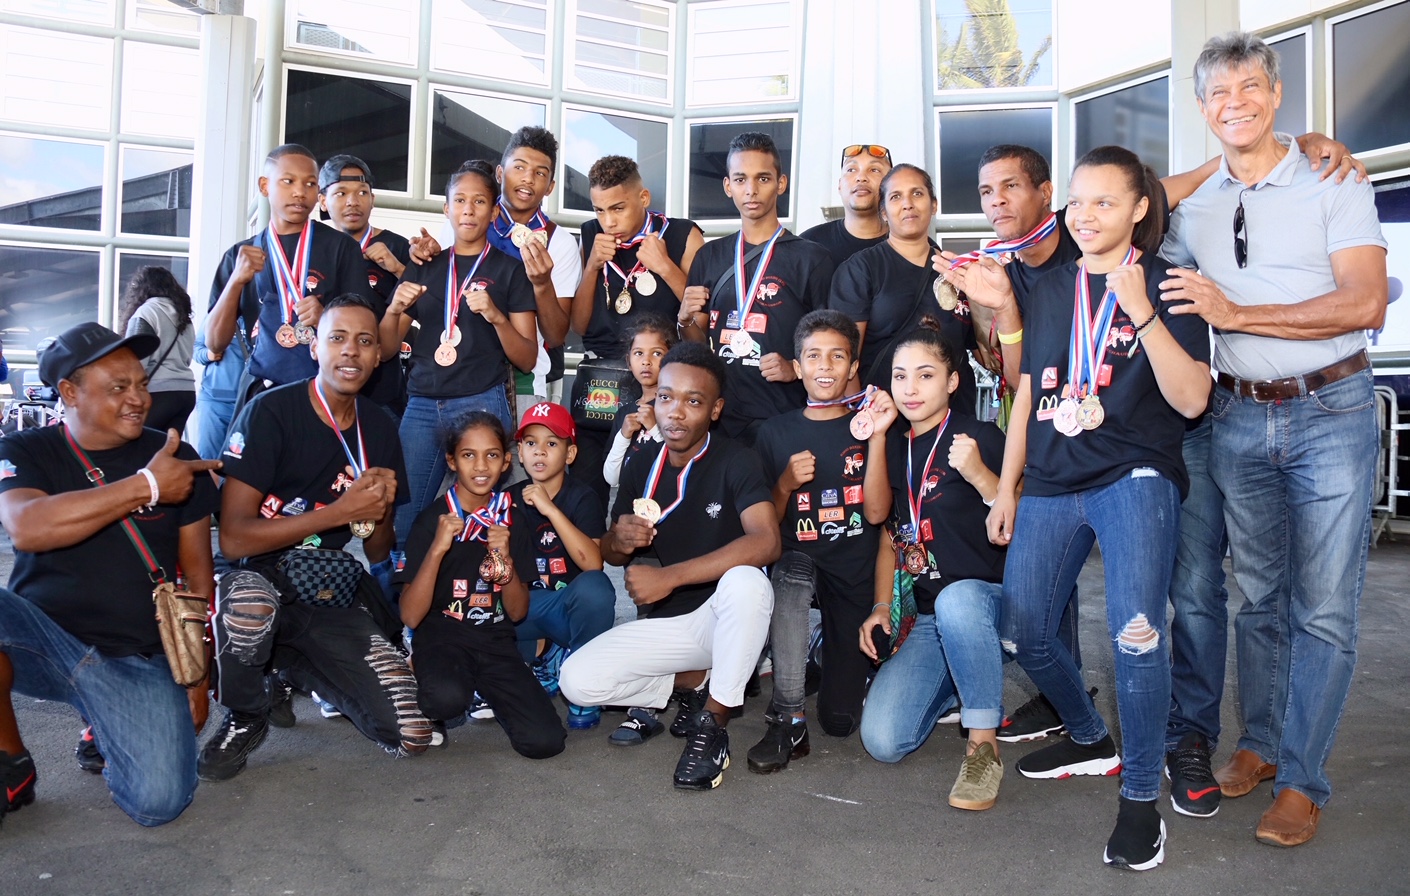 REUNION. Foison de médailles pour les jeunes du Kibio Boxing Club du Chaudron aux Championnats de France 25 médailles dont 8 en or